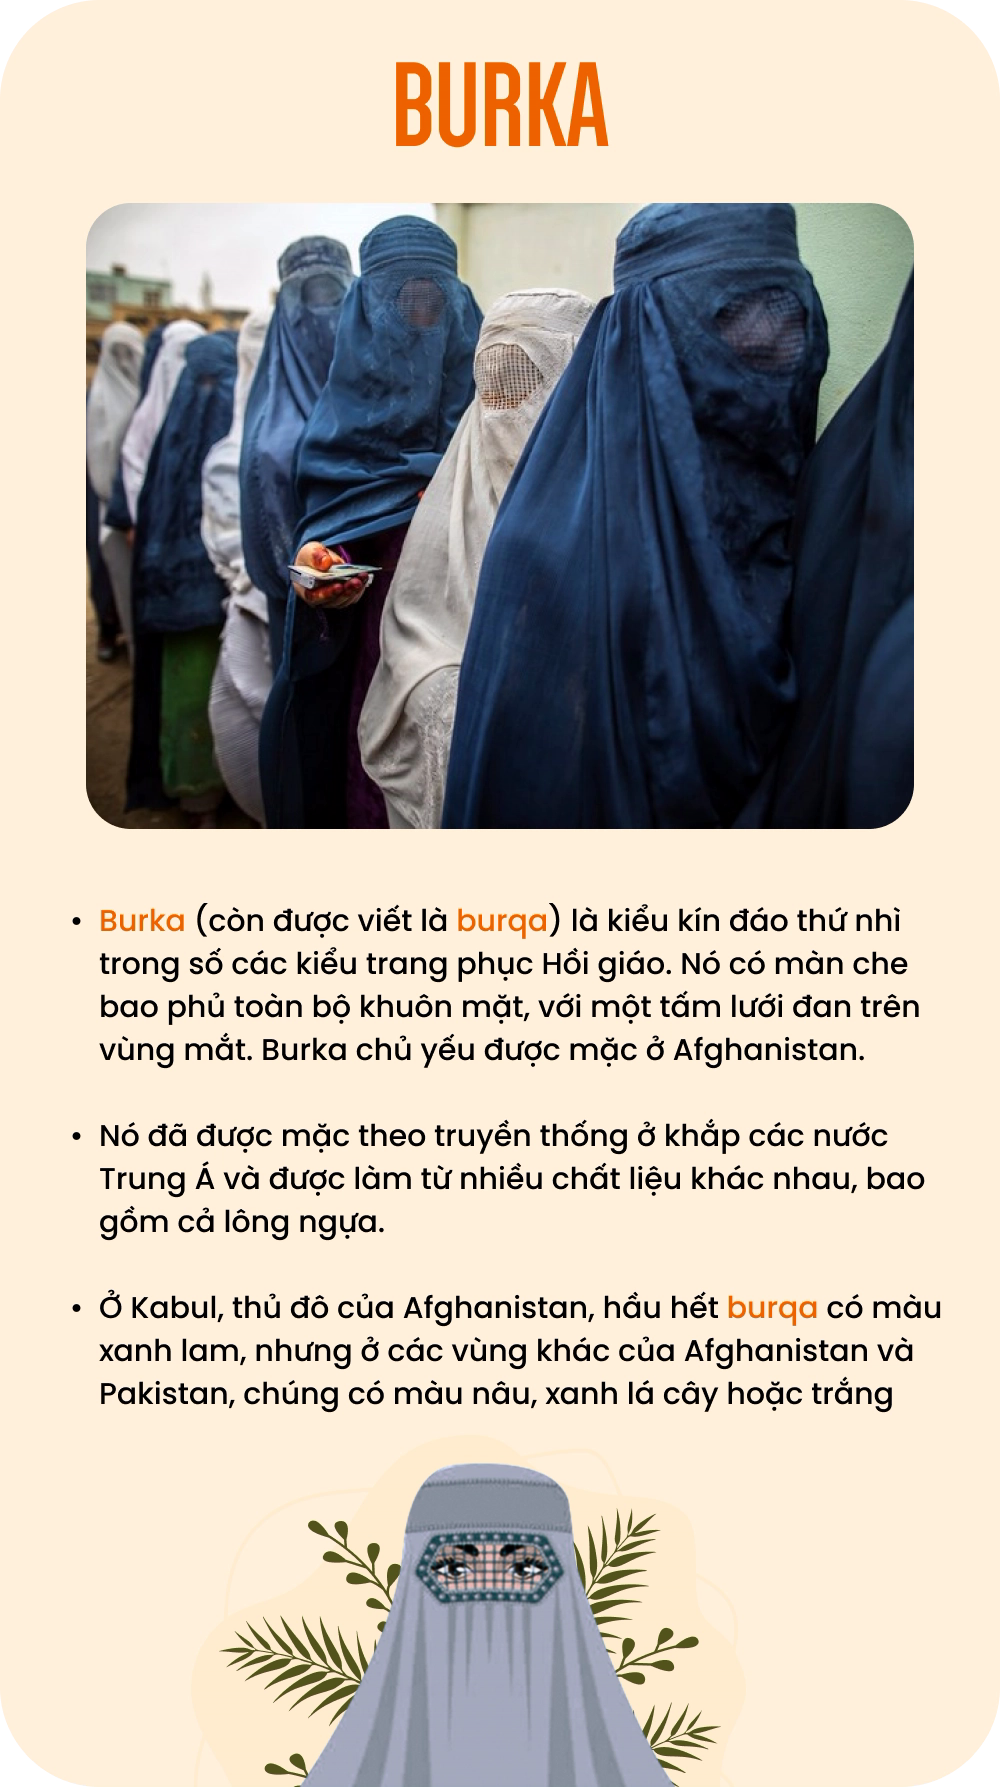 Tình cảnh phụ nữ Afghanistan: Phải tổ chức lớp học tại nhà, quy định trang phục hà khắc, công viên cũng không được 'bén mảng' - Ảnh 3.